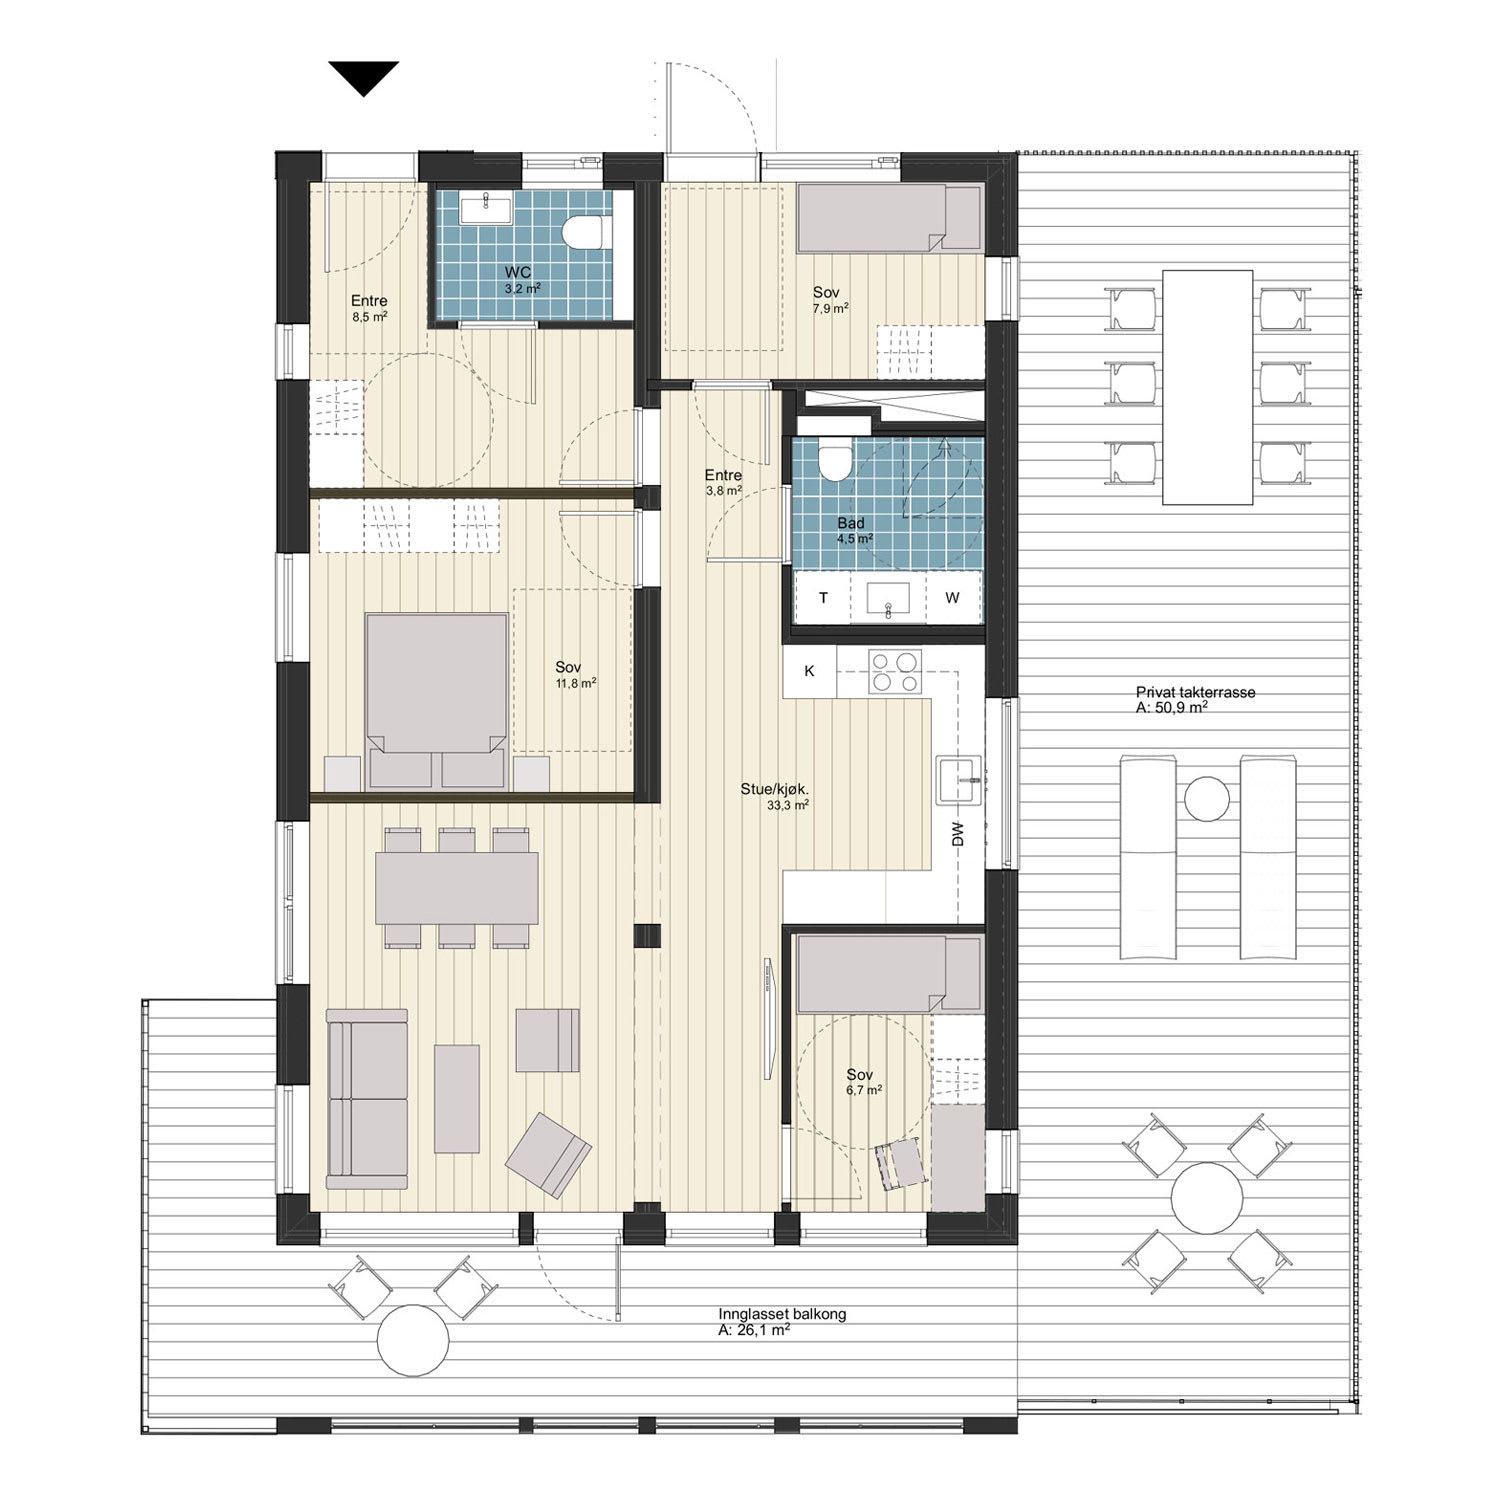 4-roms leilighet med privat takterrasse, 84 m² (BRA-i)